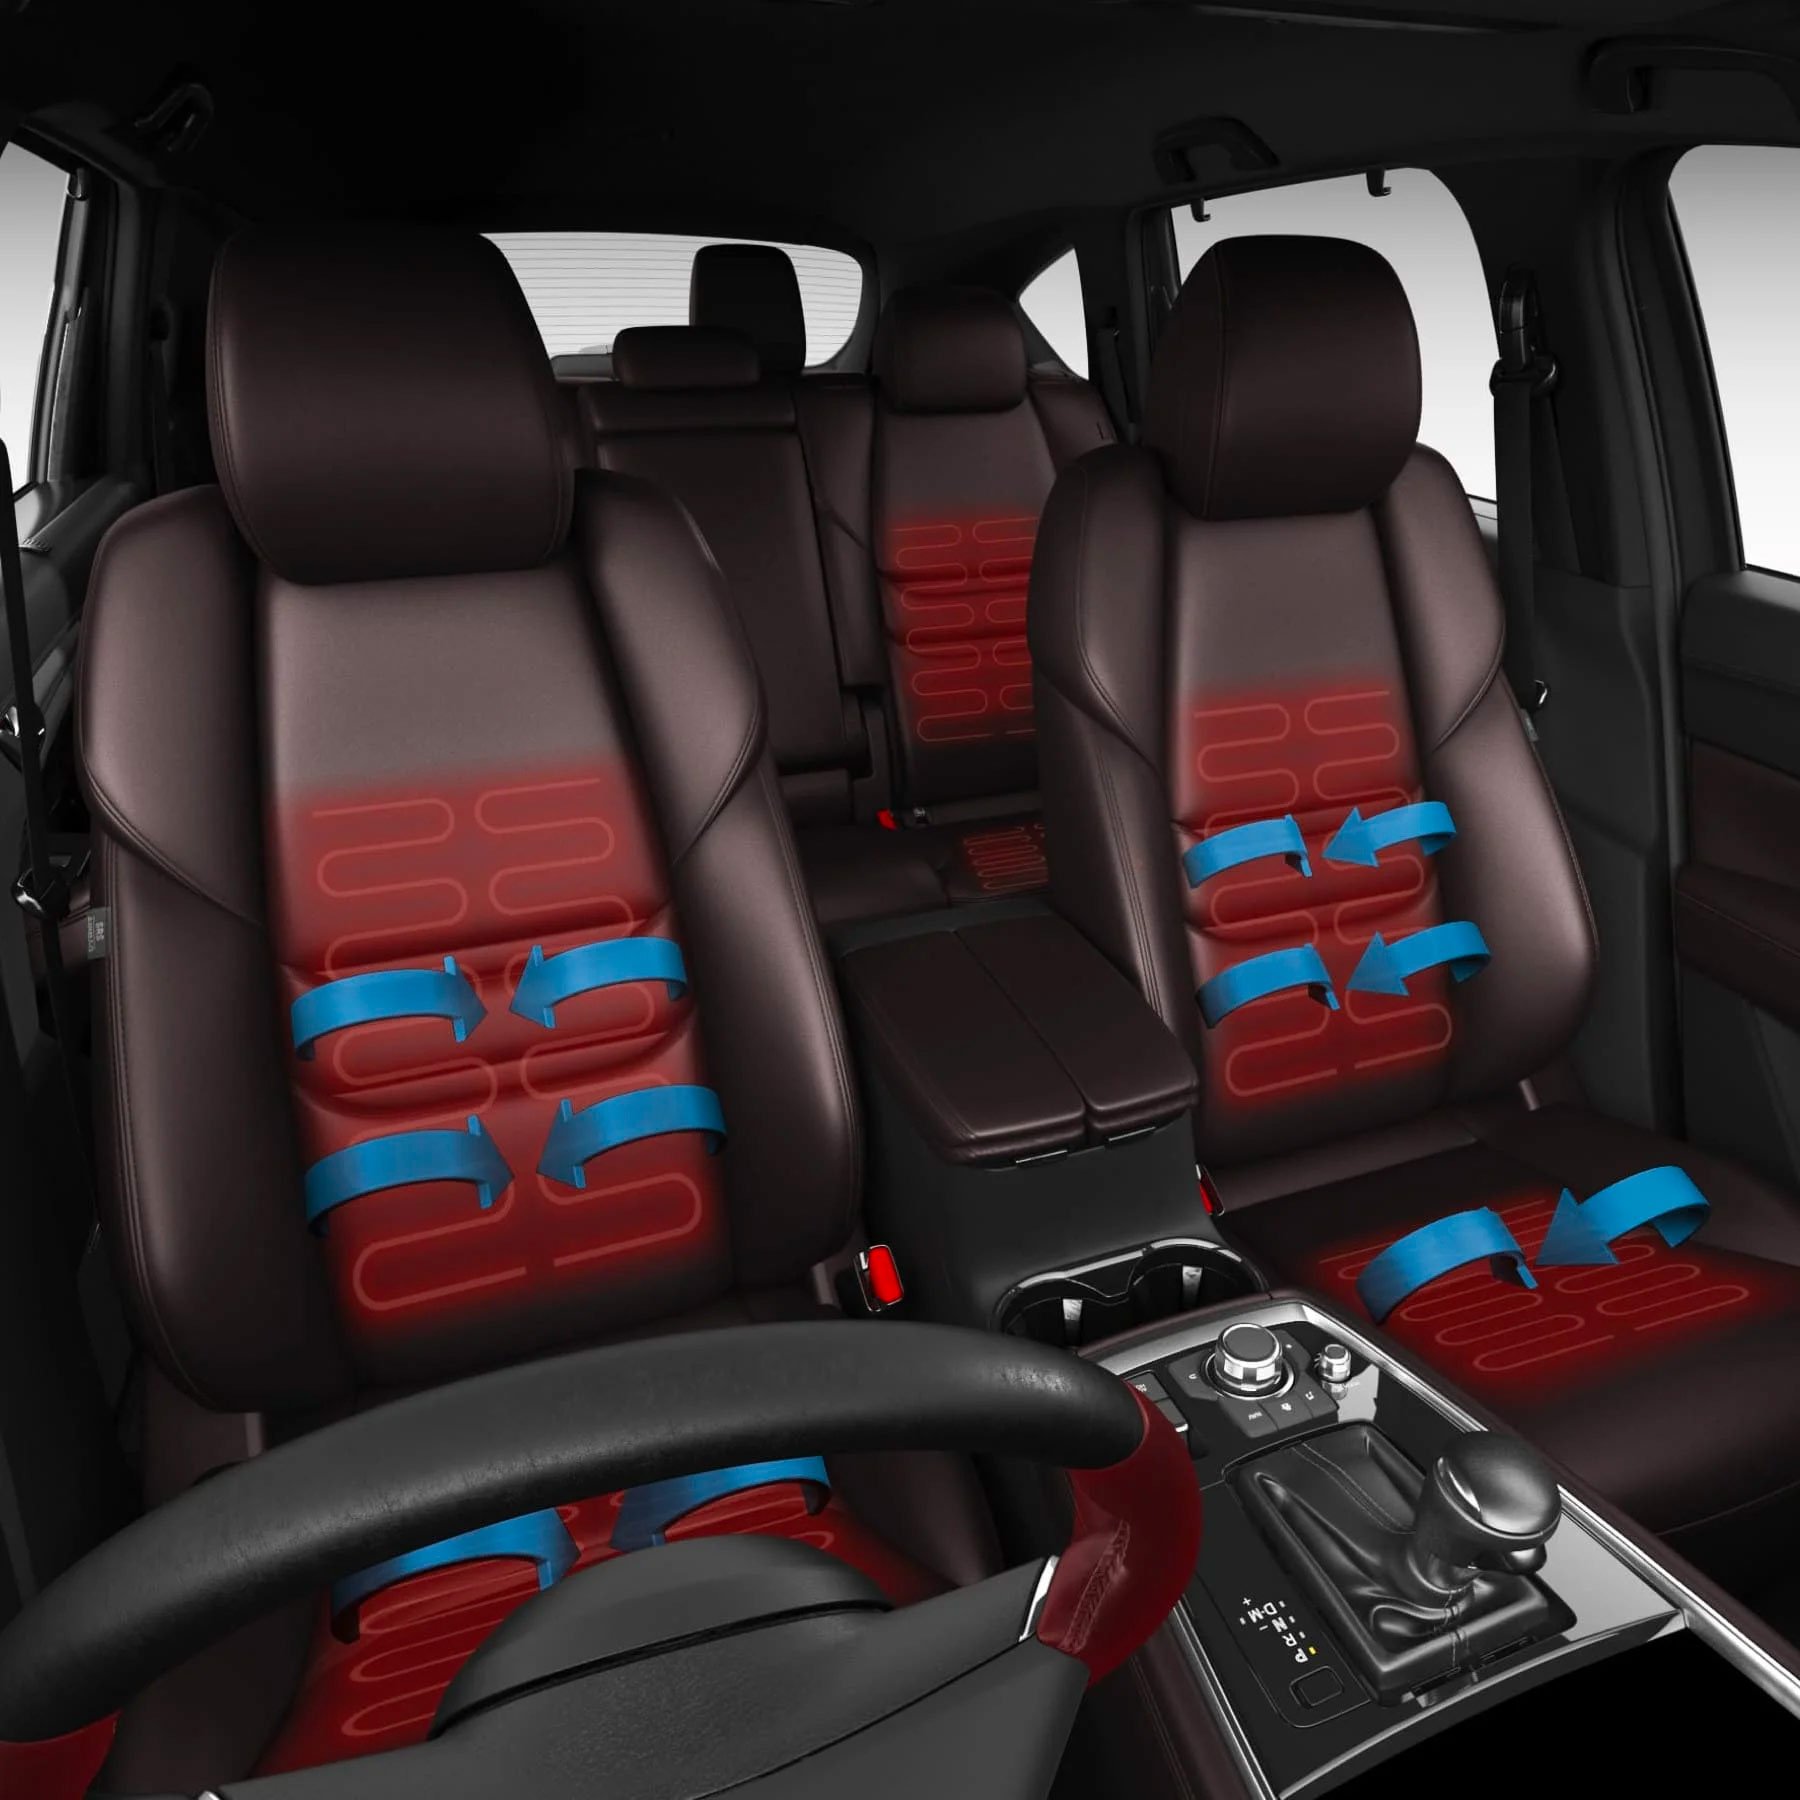 Heated & Ventilated seats & Heated Steering Wheel